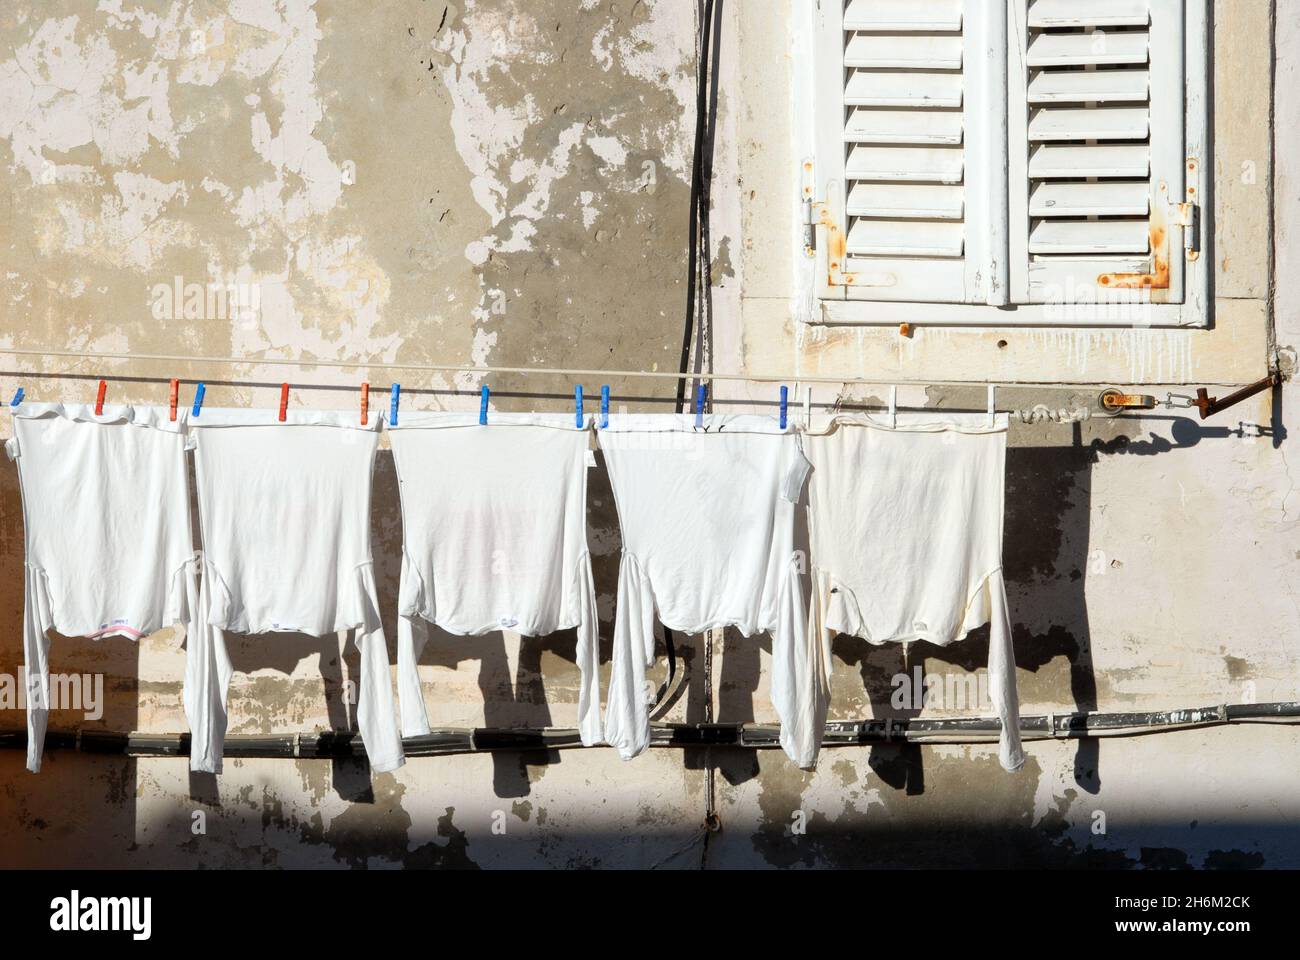 Rangée de chemises blanches accrochées à la ligne de lavage, vue depuis les remparts de la ville, la vieille ville, Dubrovnik, Croatie. Banque D'Images